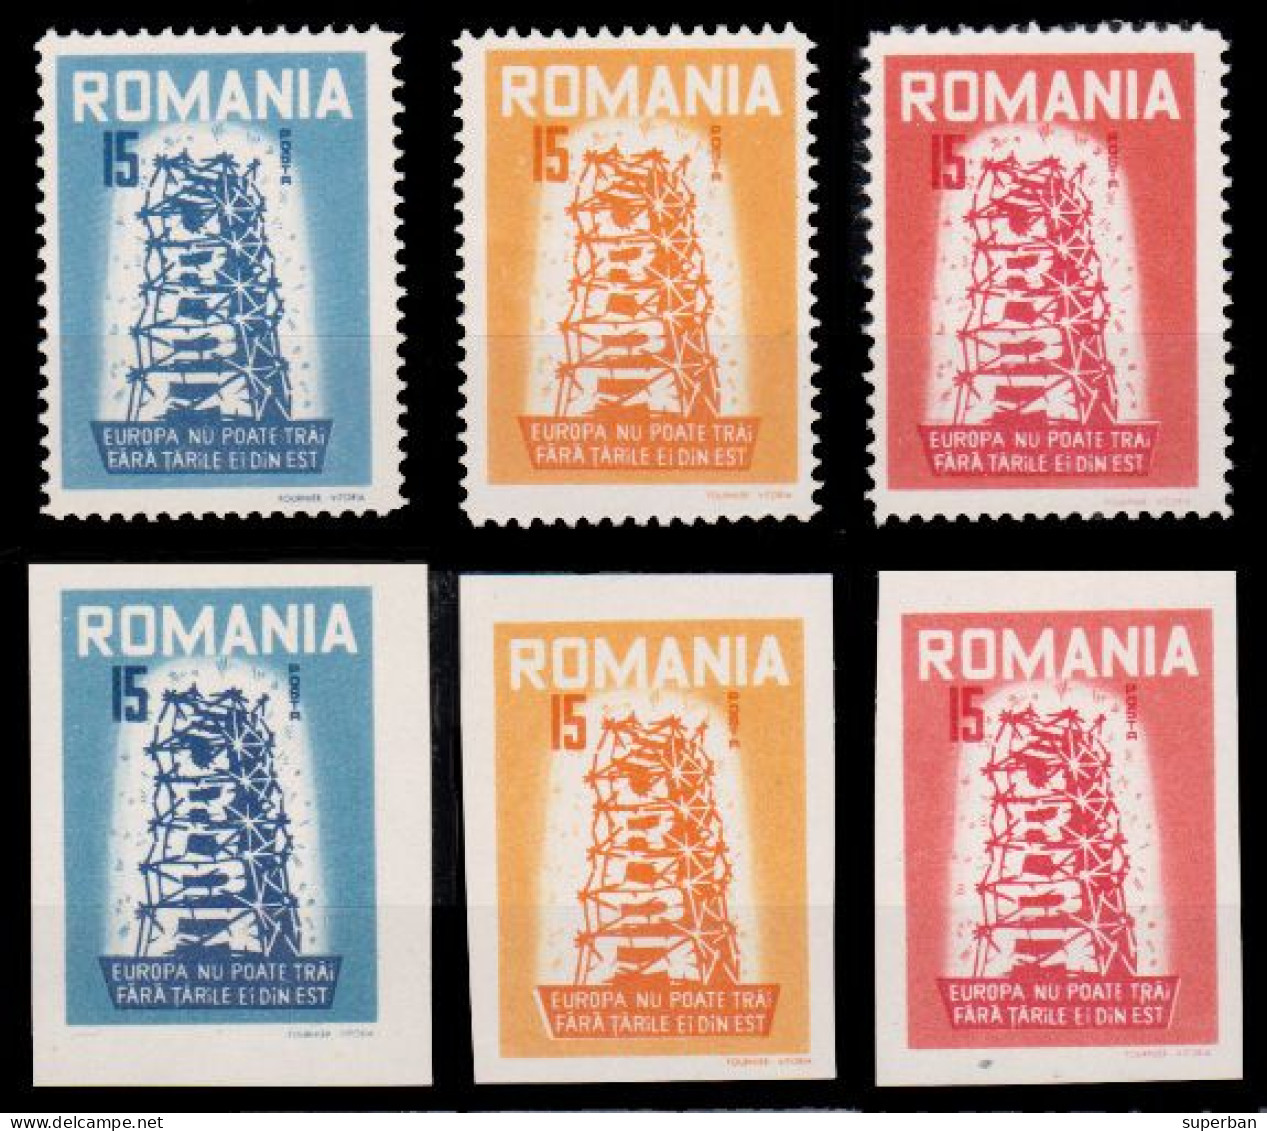 ROMANIA - SPAIN EXILE : EUROPA CEPT - 1956 - SÉRIE COMPLÈTE / COMPLET SET - PERF. & UNPERF. - MNH - RRR ! (al323) - 1956